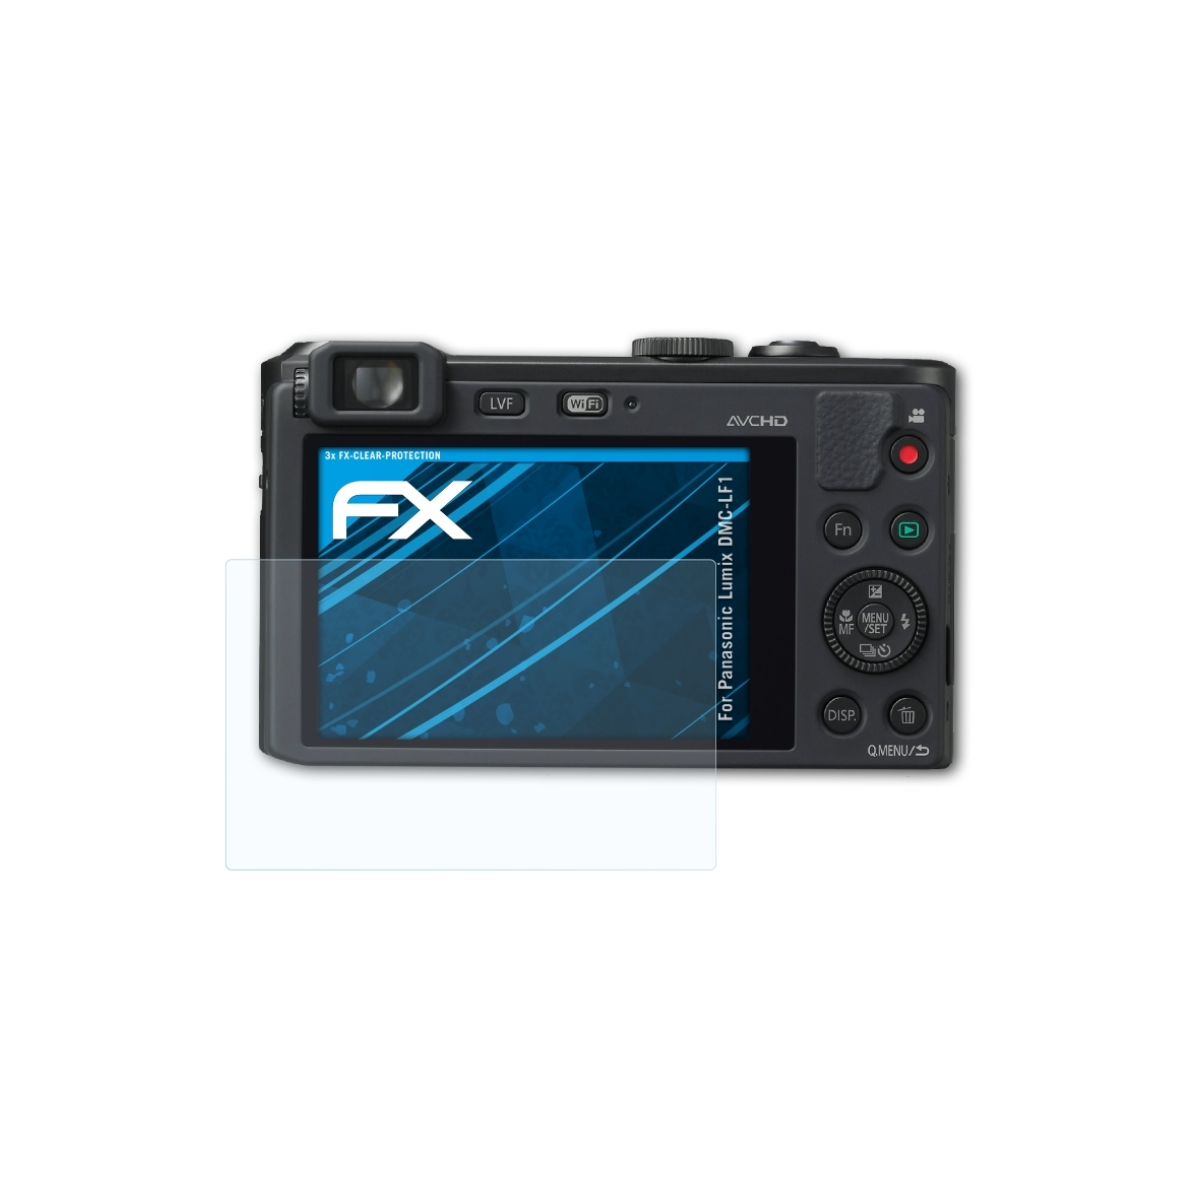 Lumix ATFOLIX FX-Clear DMC-LF1) Displayschutz(für Panasonic 3x